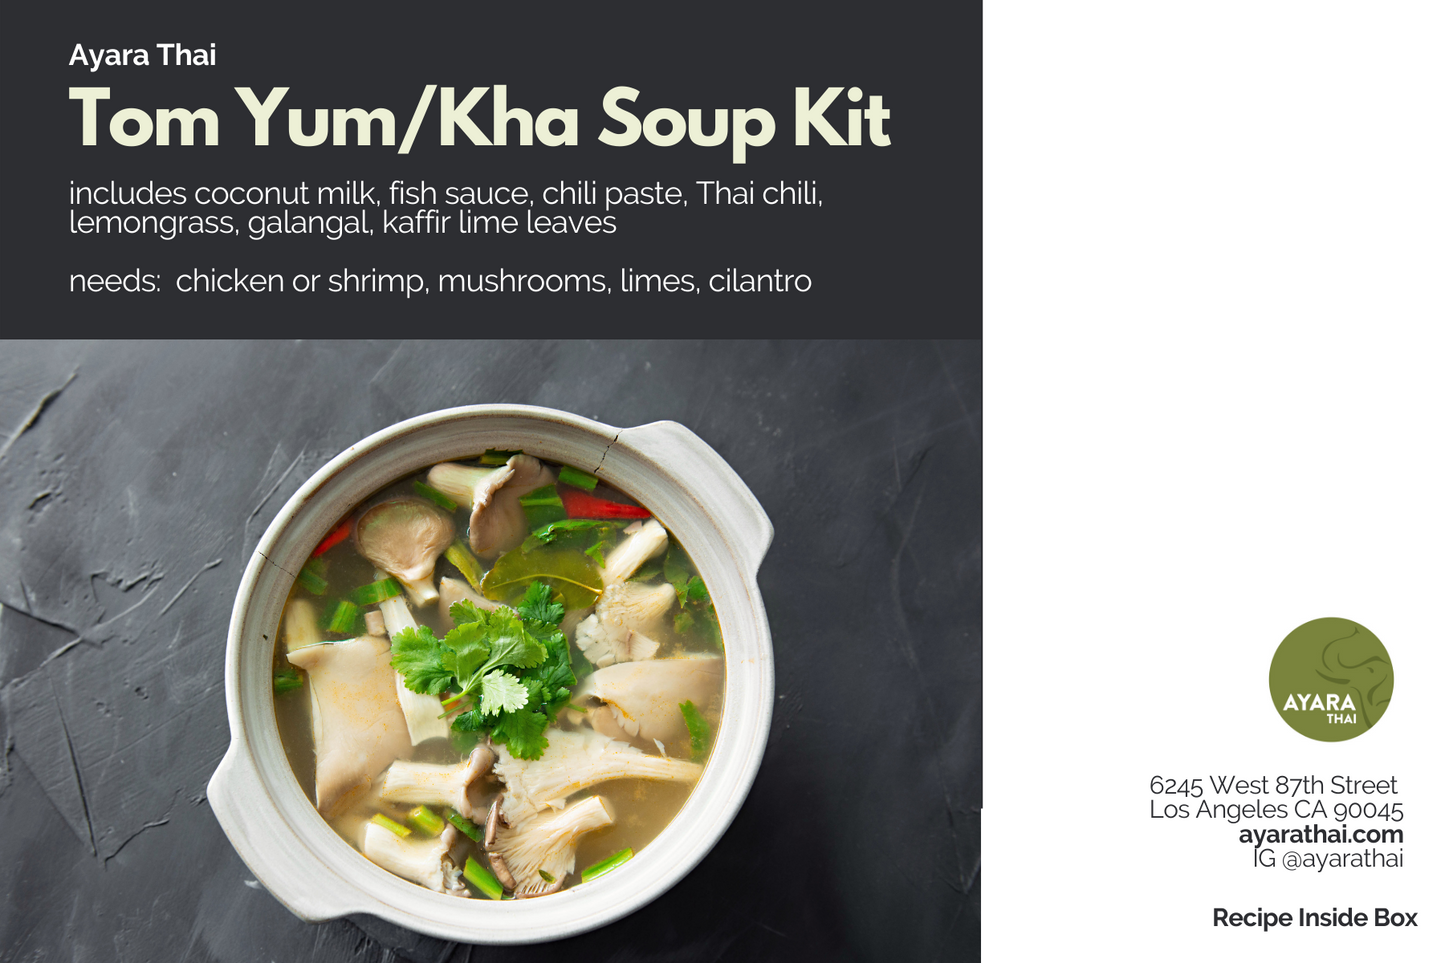 Tom Yum/Kha Soup Kit